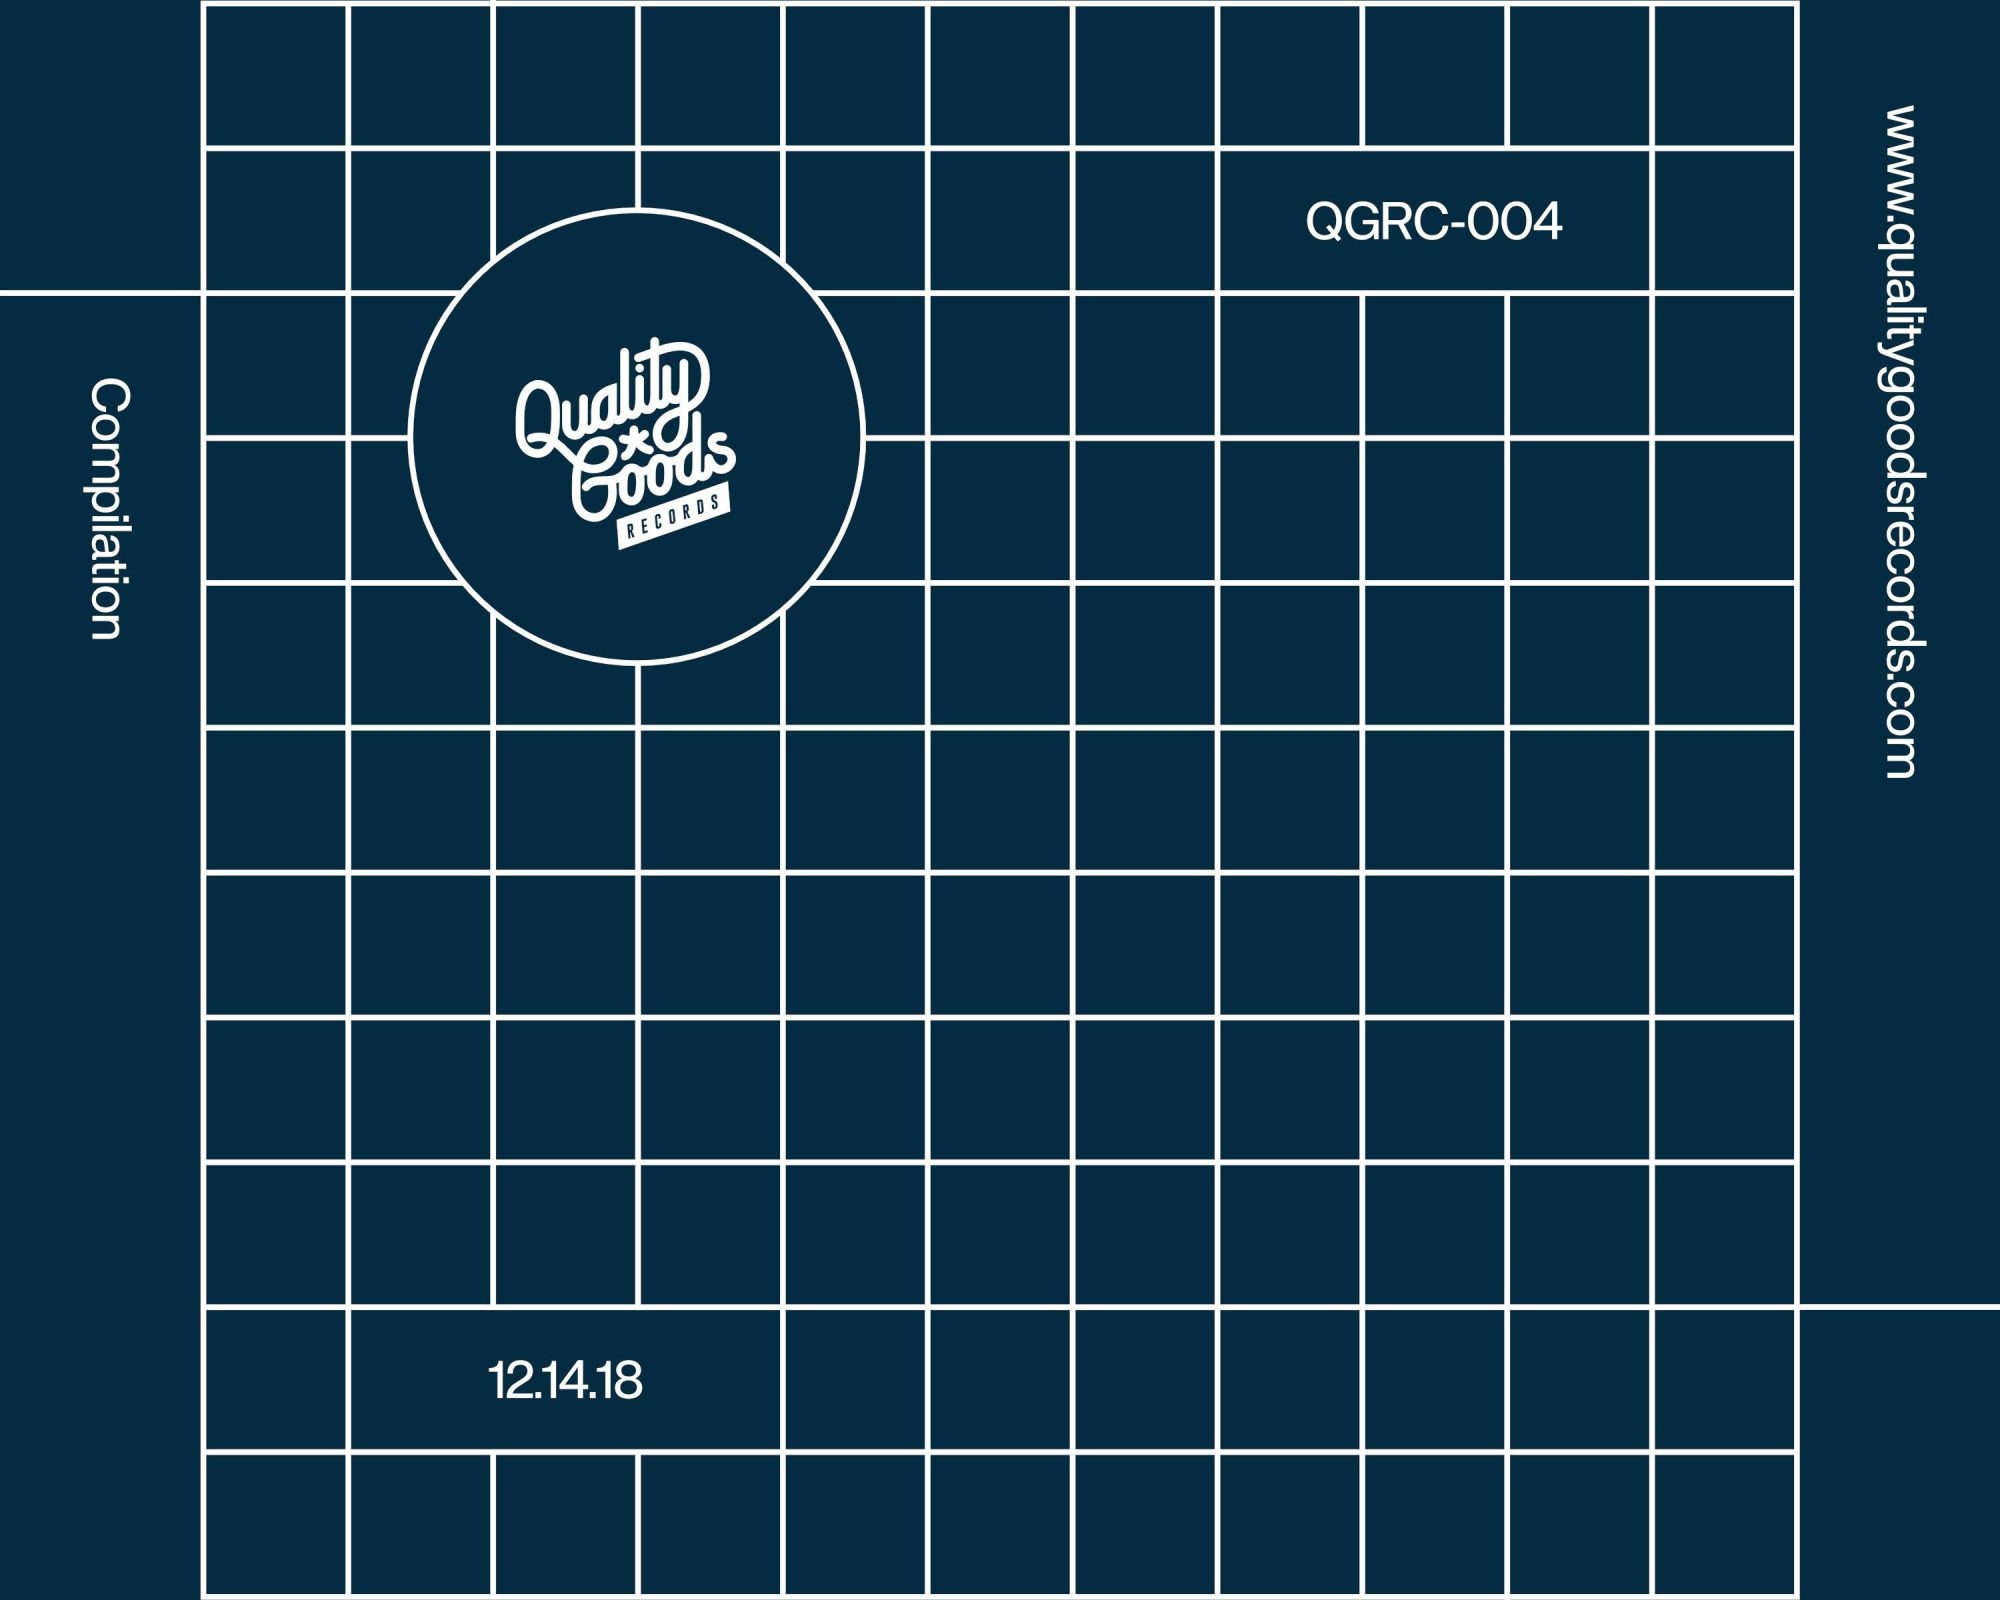 QGRC-004 Album Art